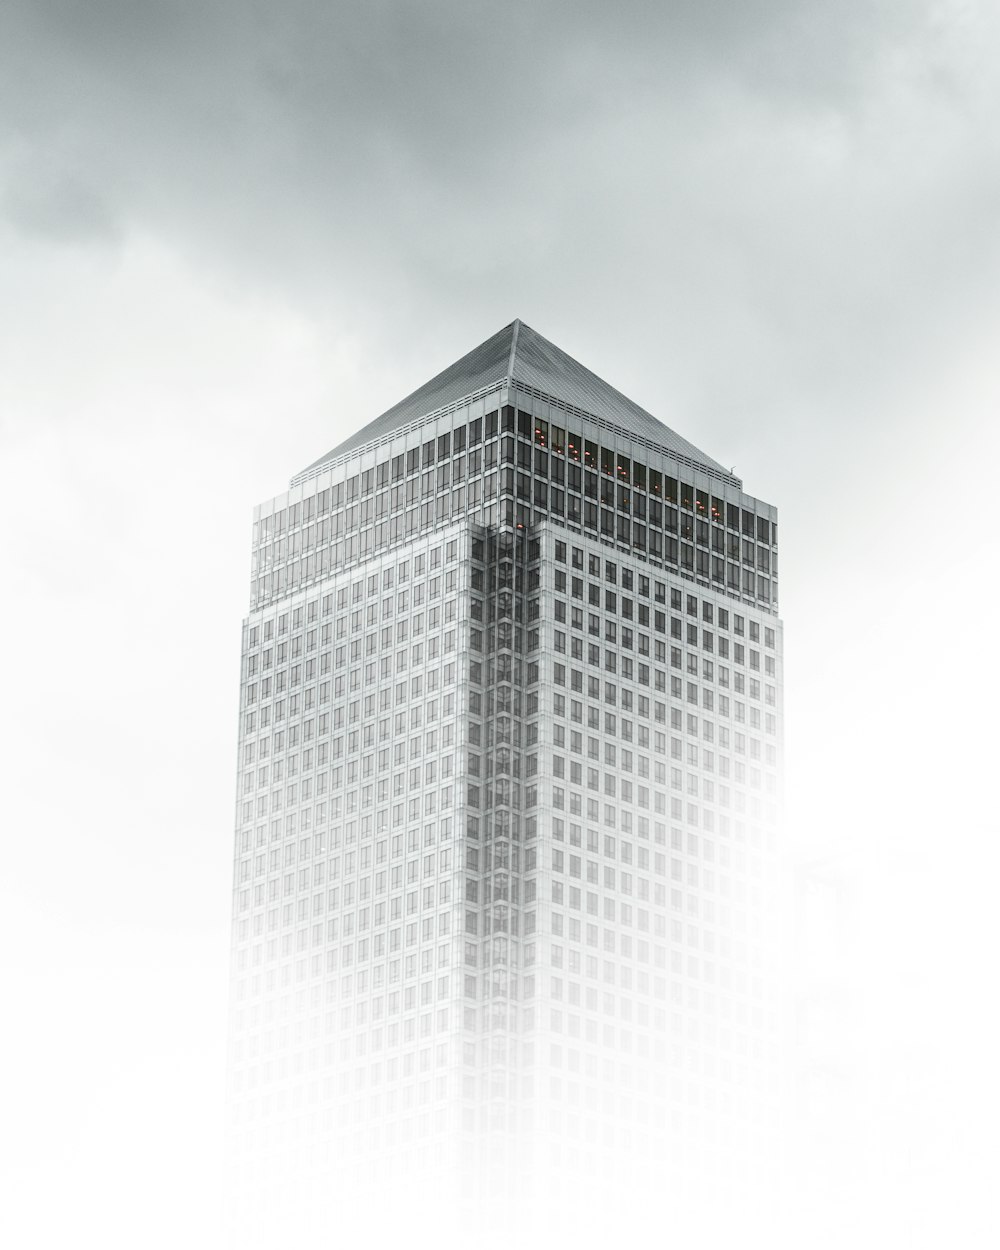 Photographie de vue à œil de ver d’un bâtiment en béton blanc et gris sous un ciel nuageux